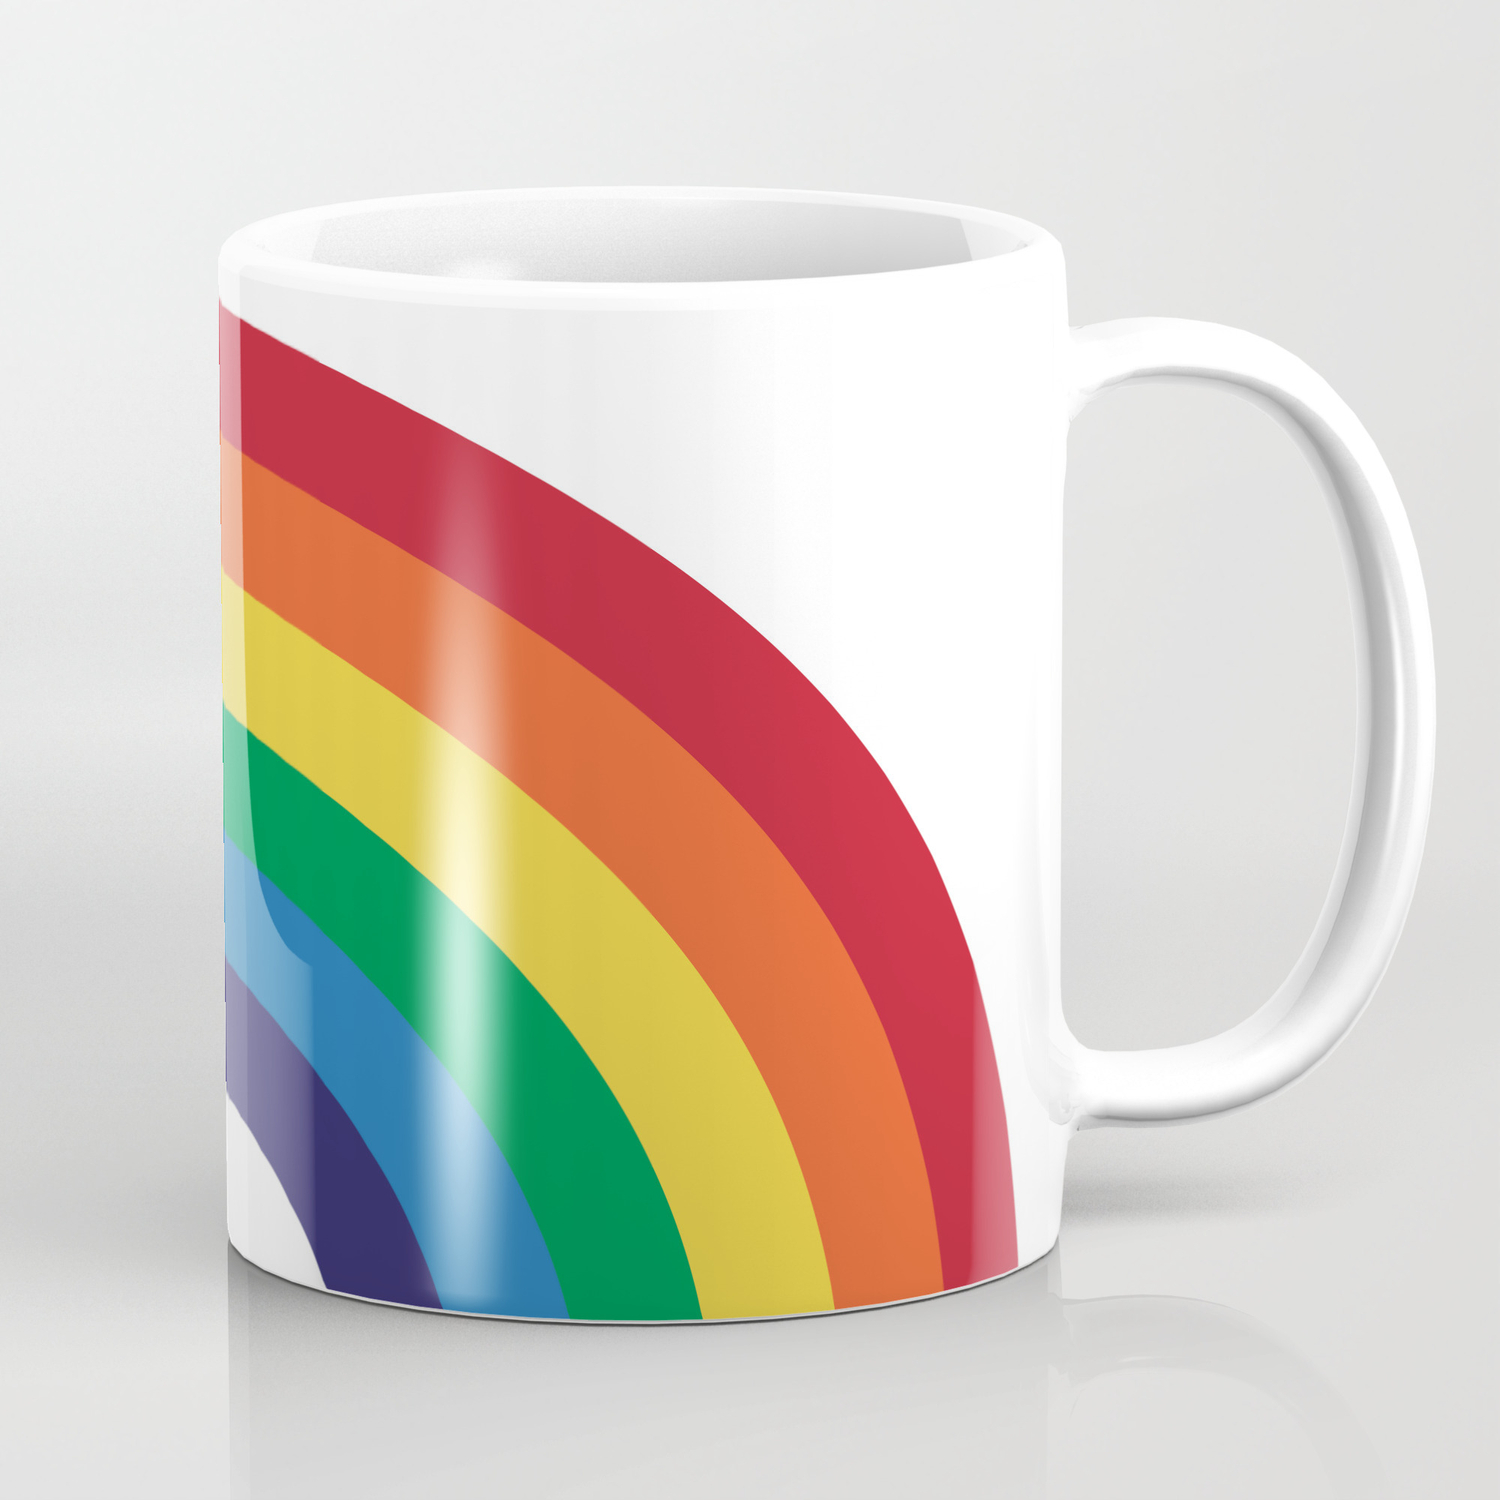 rainbow cup